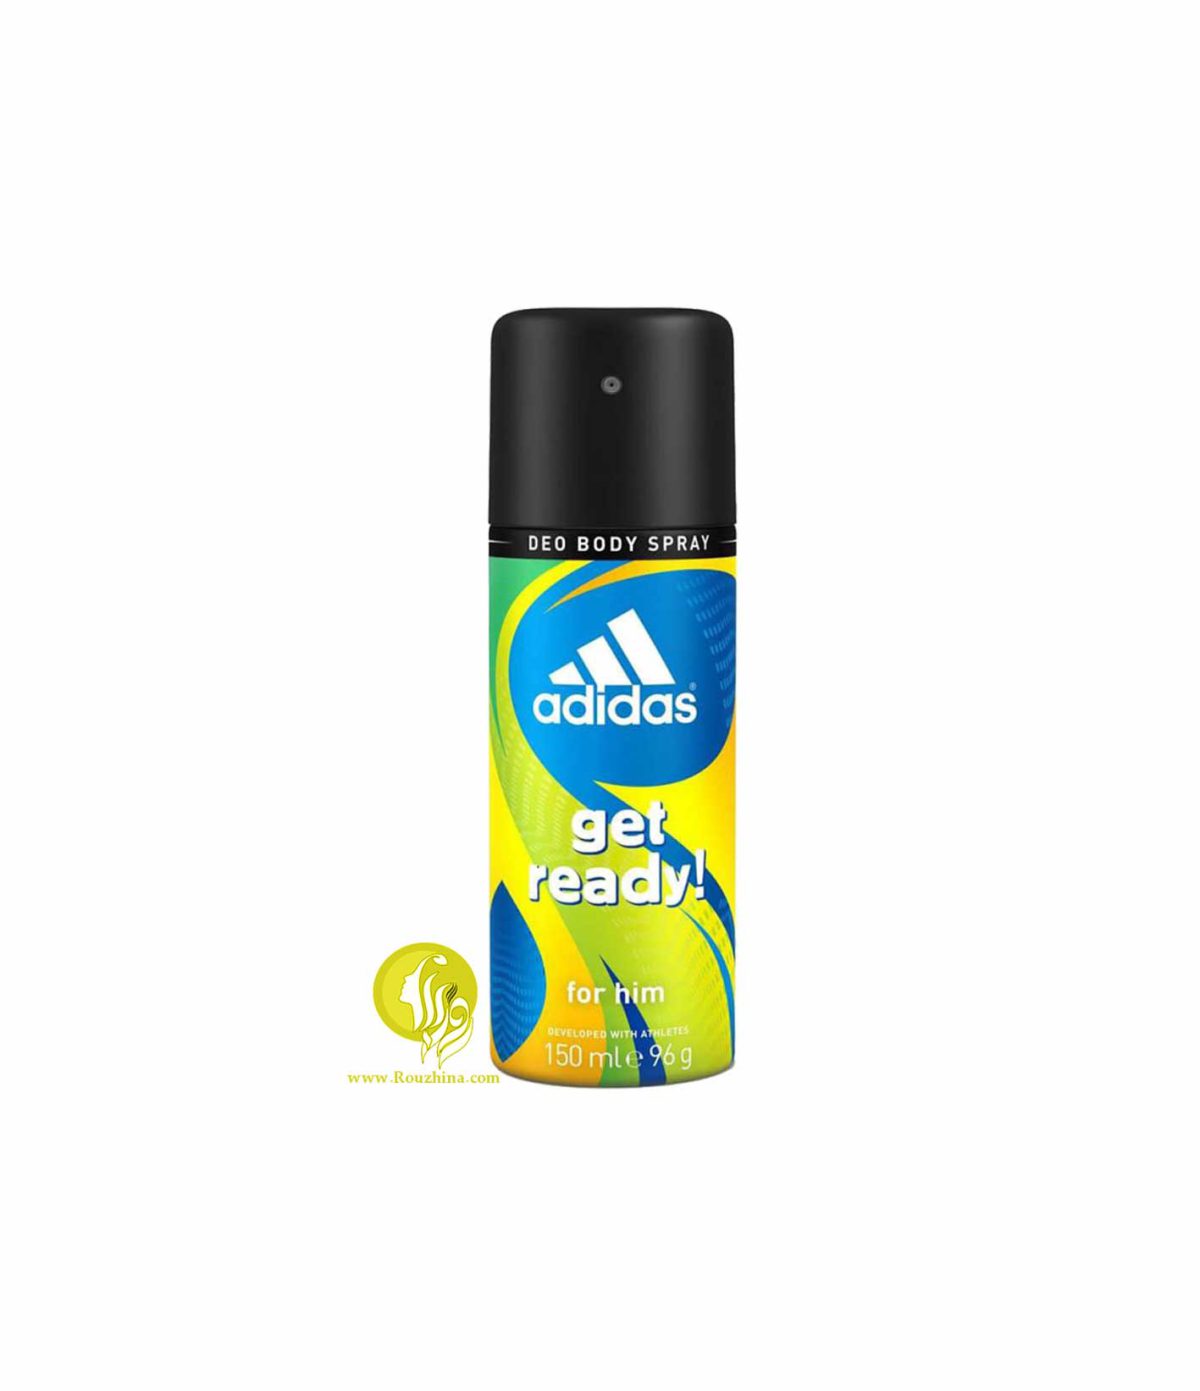 فروش ویژه اسپری ضد عرق مردانه آدیداس مدل گت ردی : Adidas Get Ready Body Deodorant Spray For Him